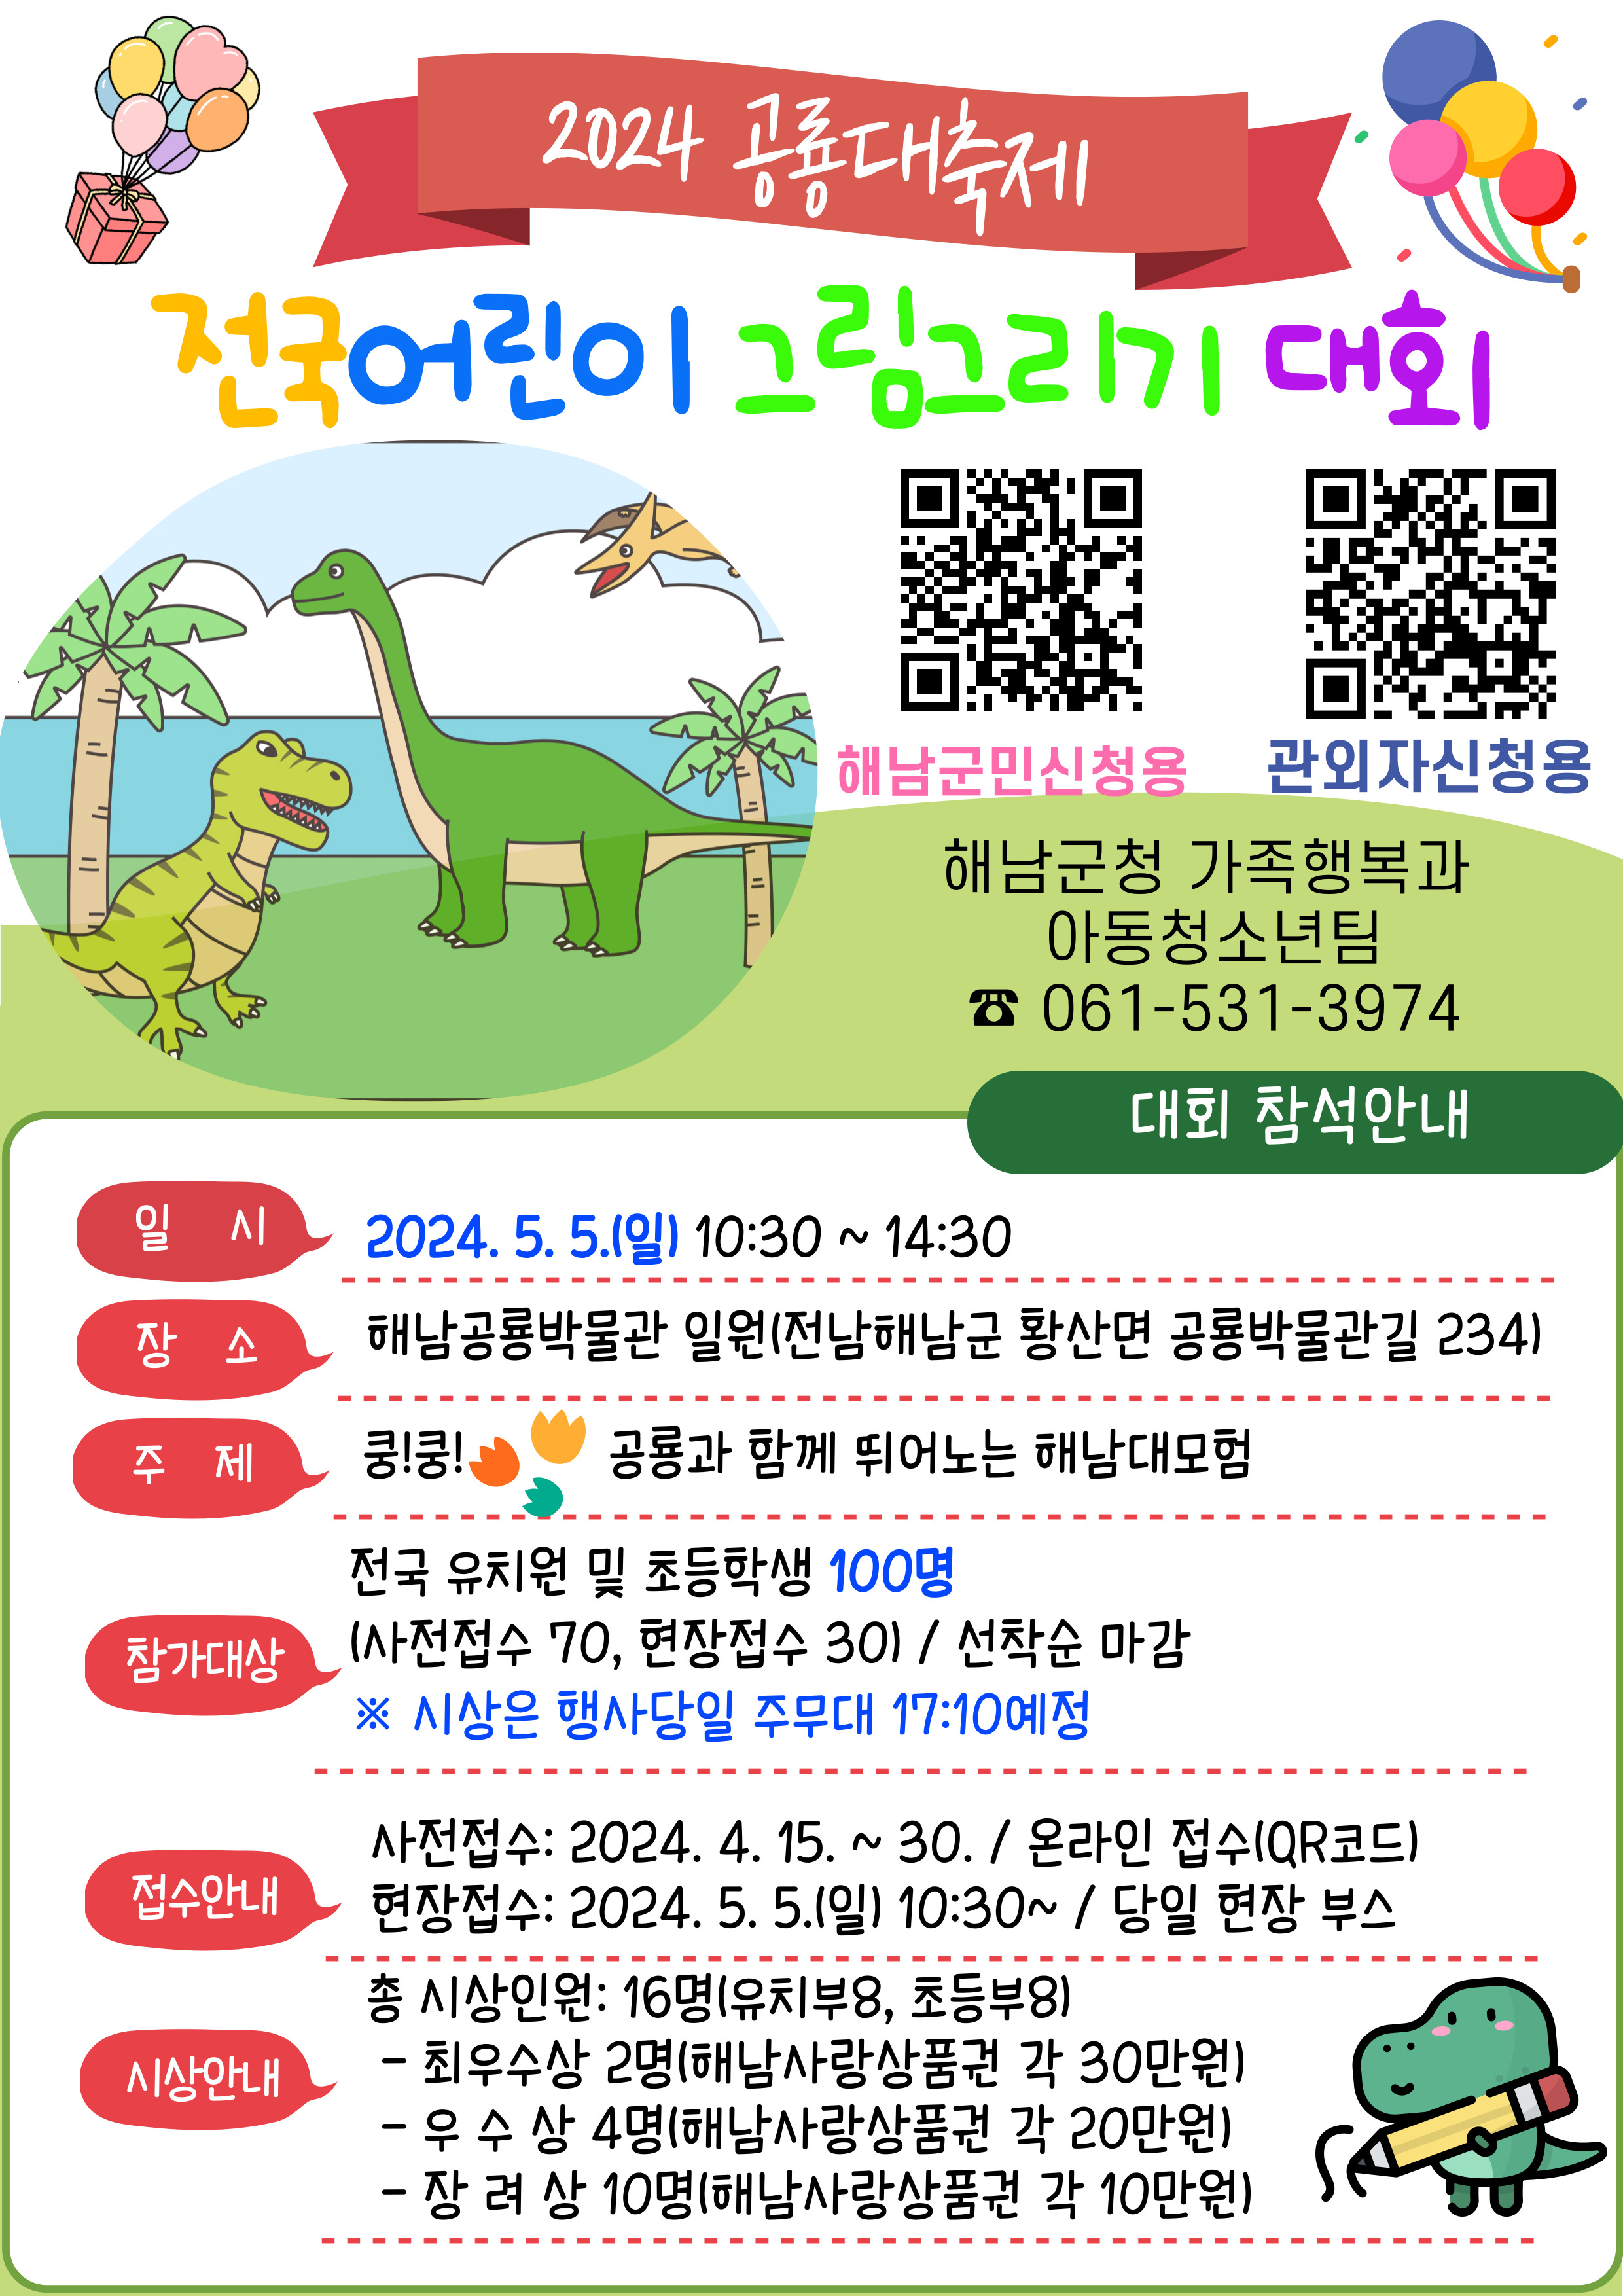 11-해남공룡대축제 전국어린이 그림그리기 대회 안내문